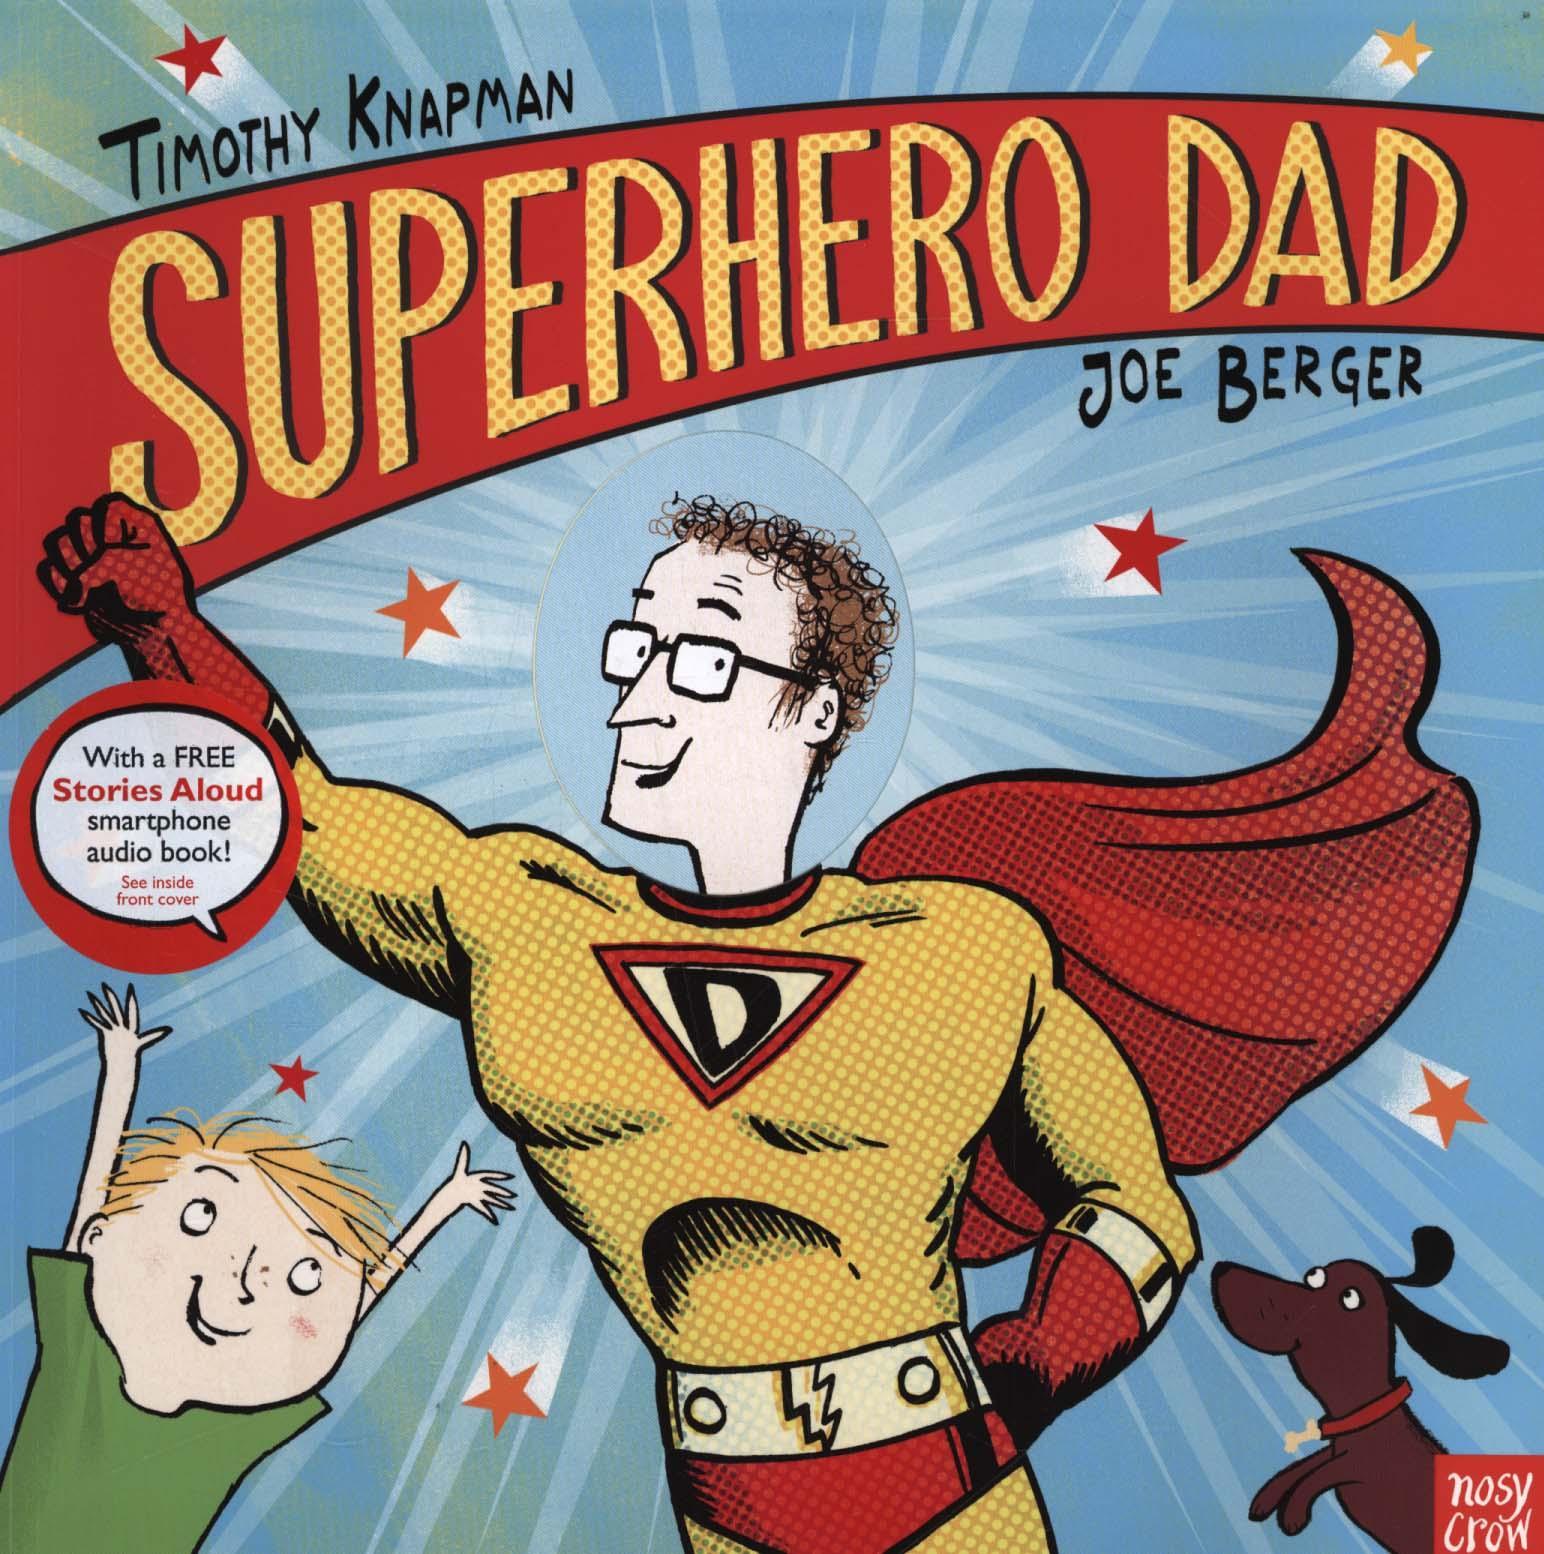 Superhero Dad